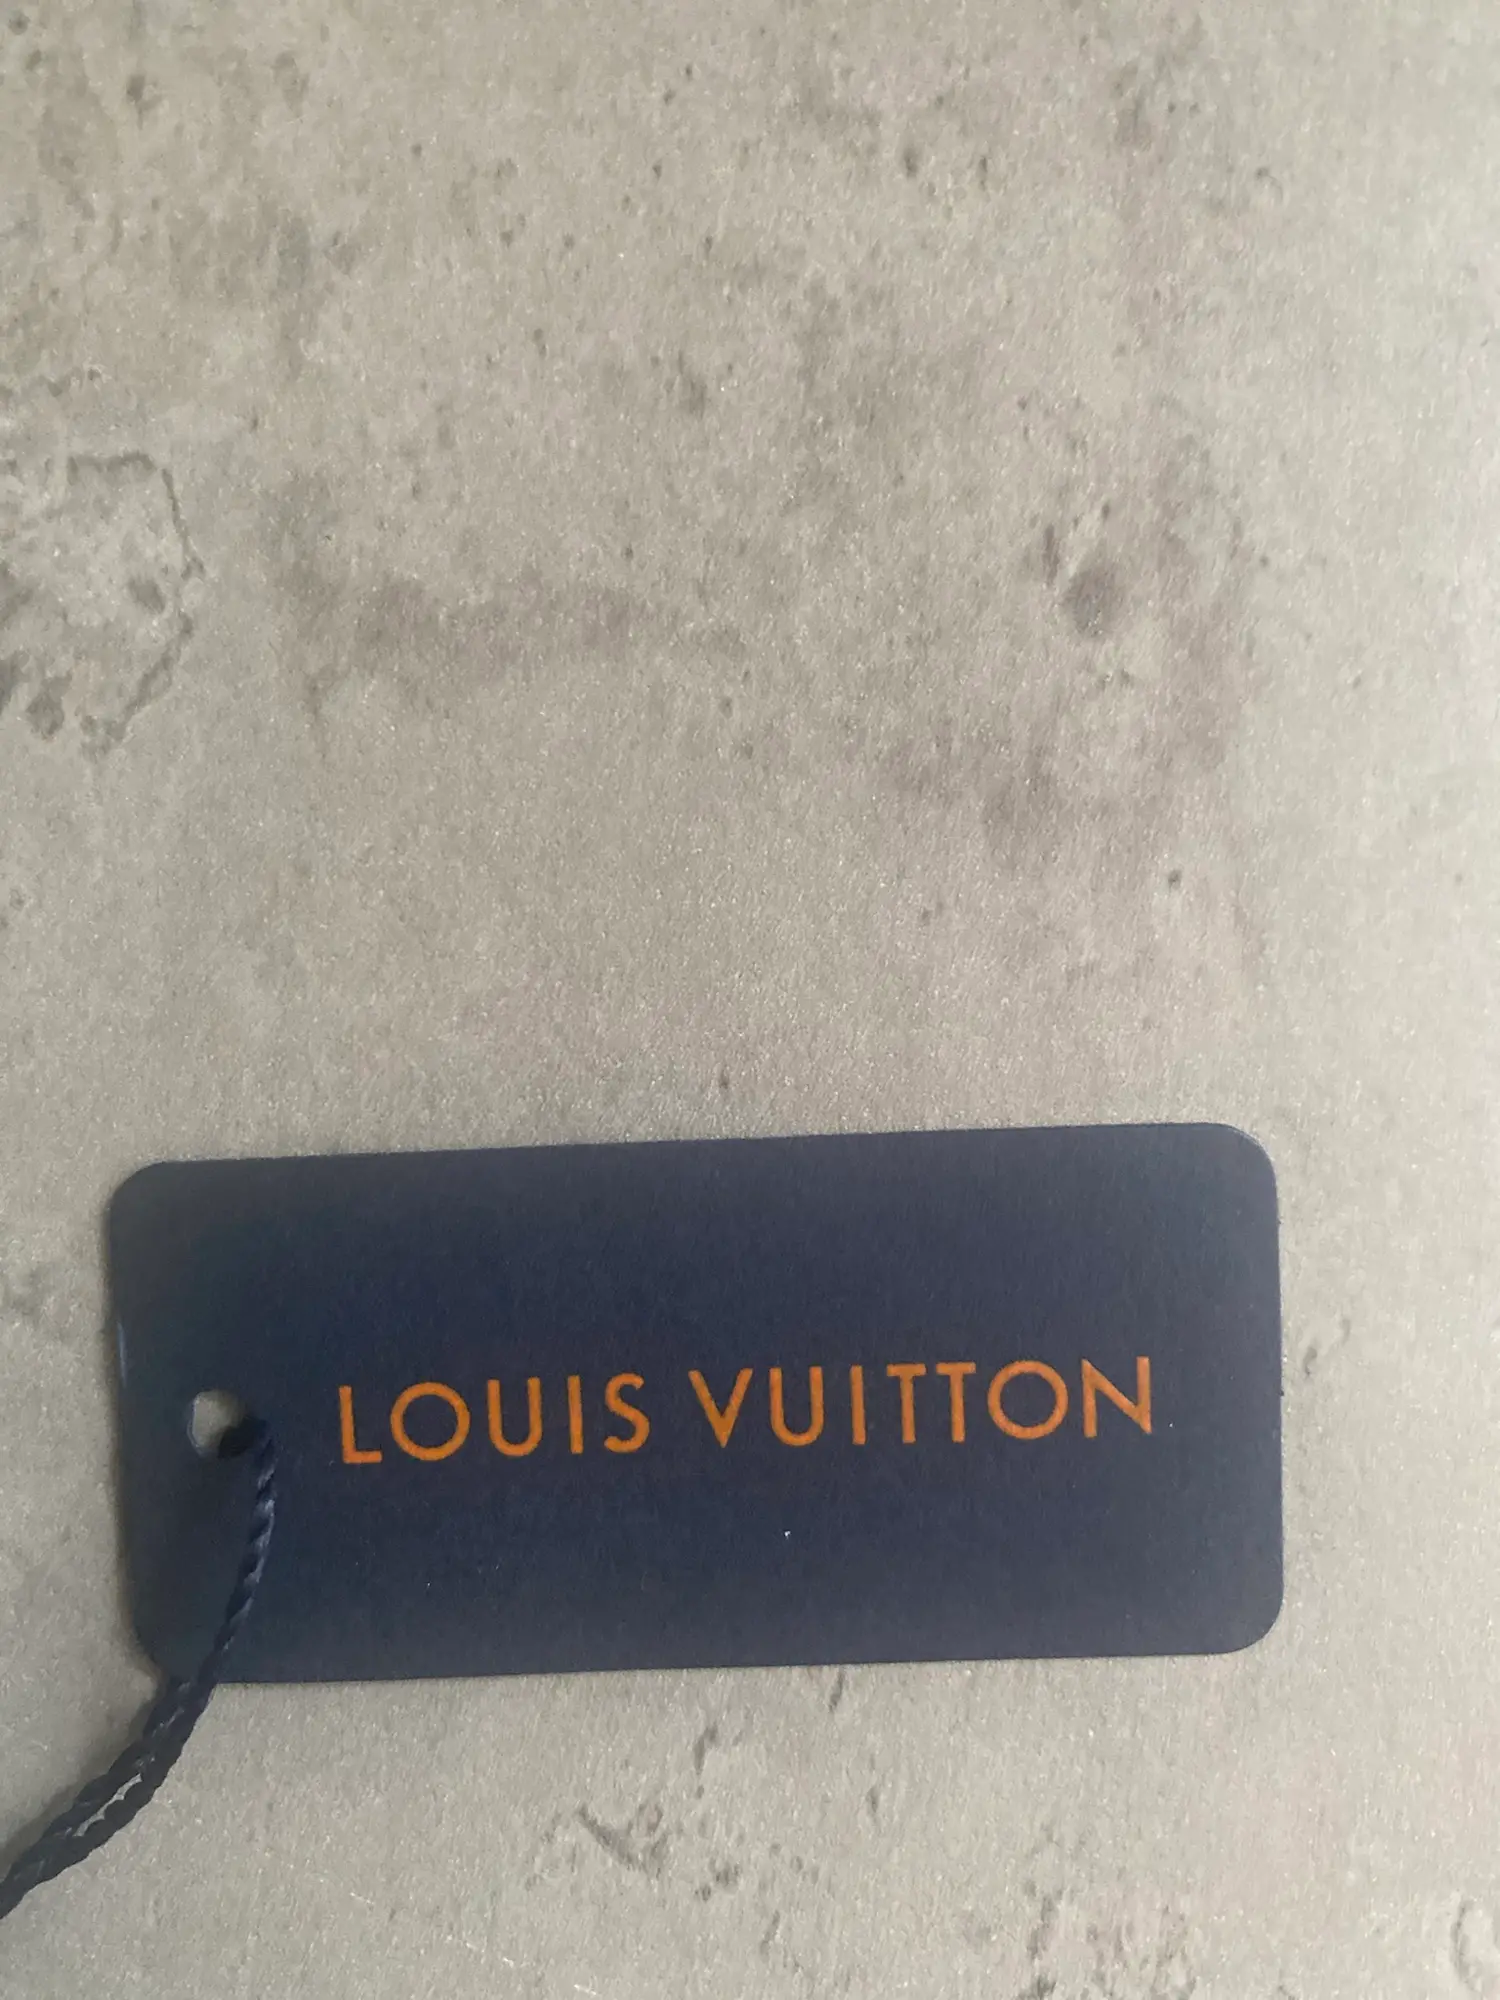 Louis Vuitton hue